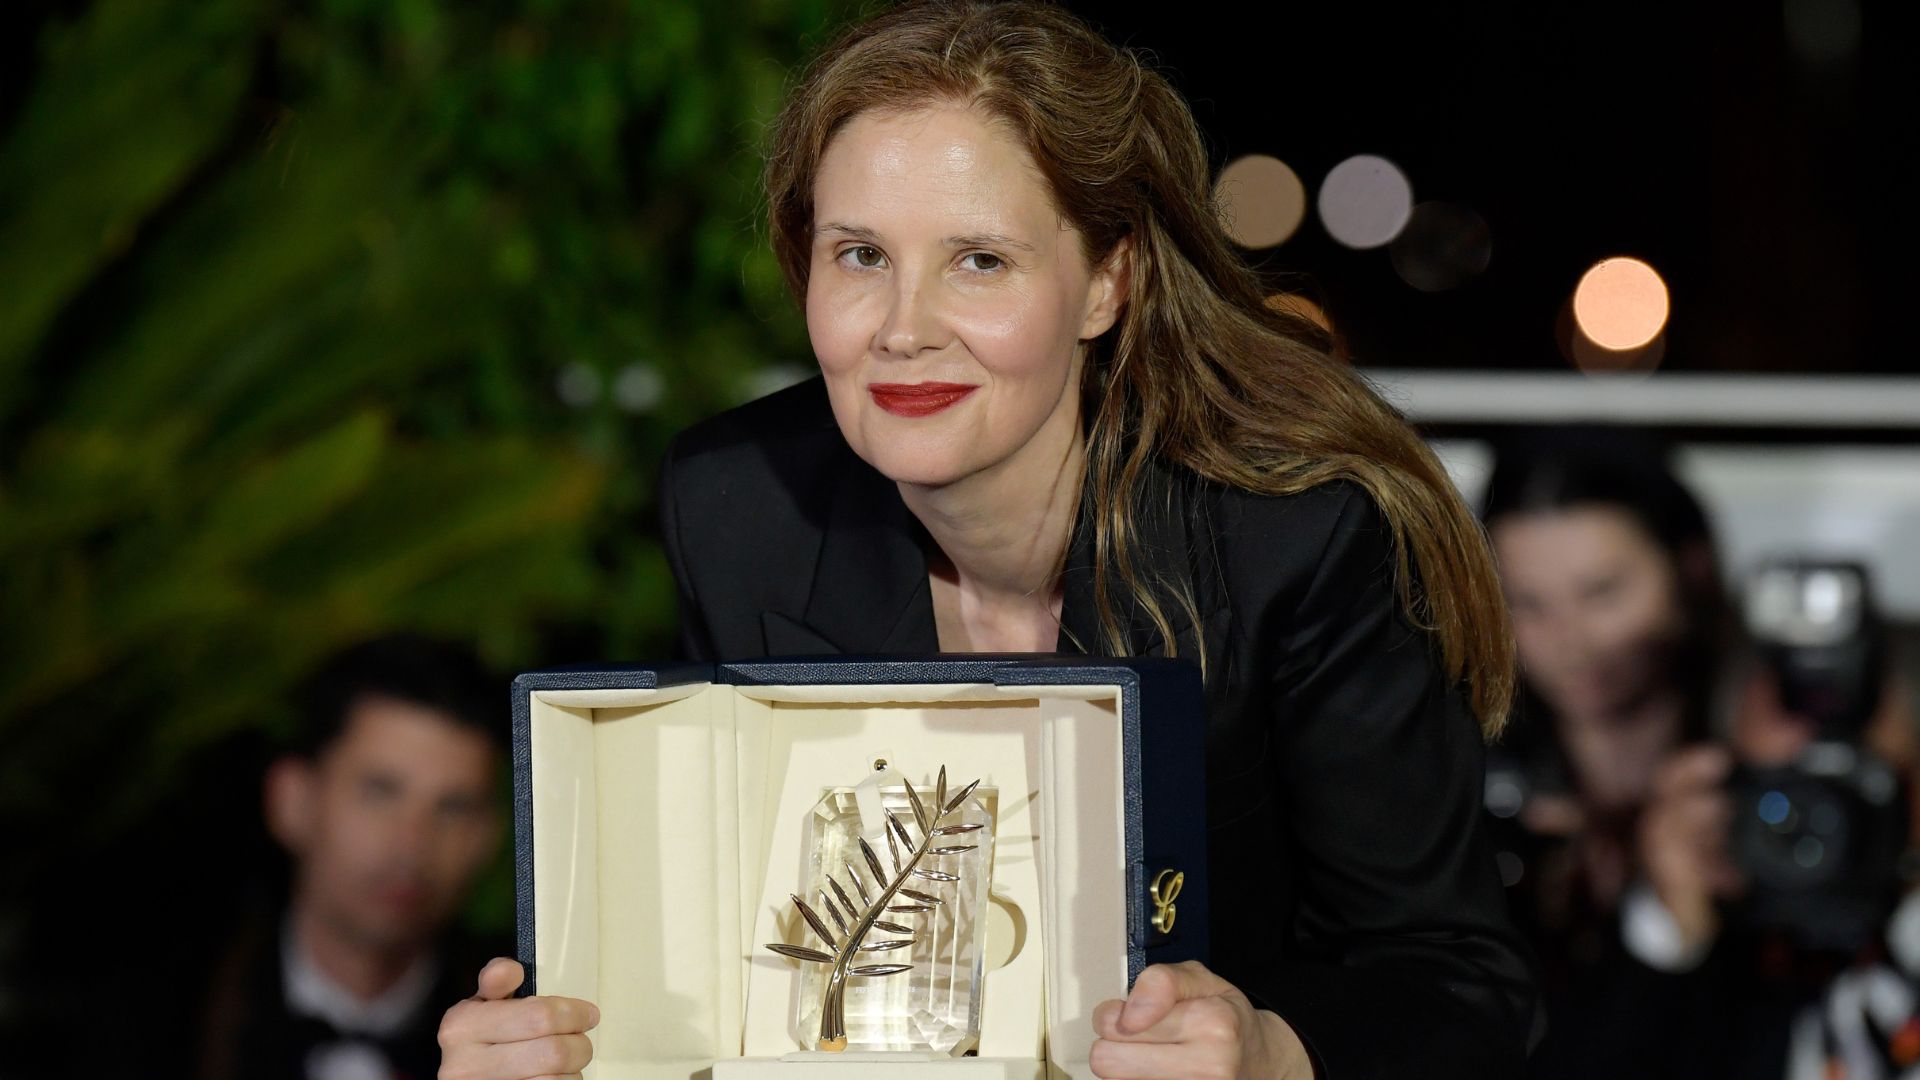 Diretora de Anatomia de uma Queda, vencedor da Palma de Ouro em Cannes, Justine Triet irá disputar a categoria de Melhor Direção no Oscar 2024 (Foto: Kristy Sparow/Getty Images)